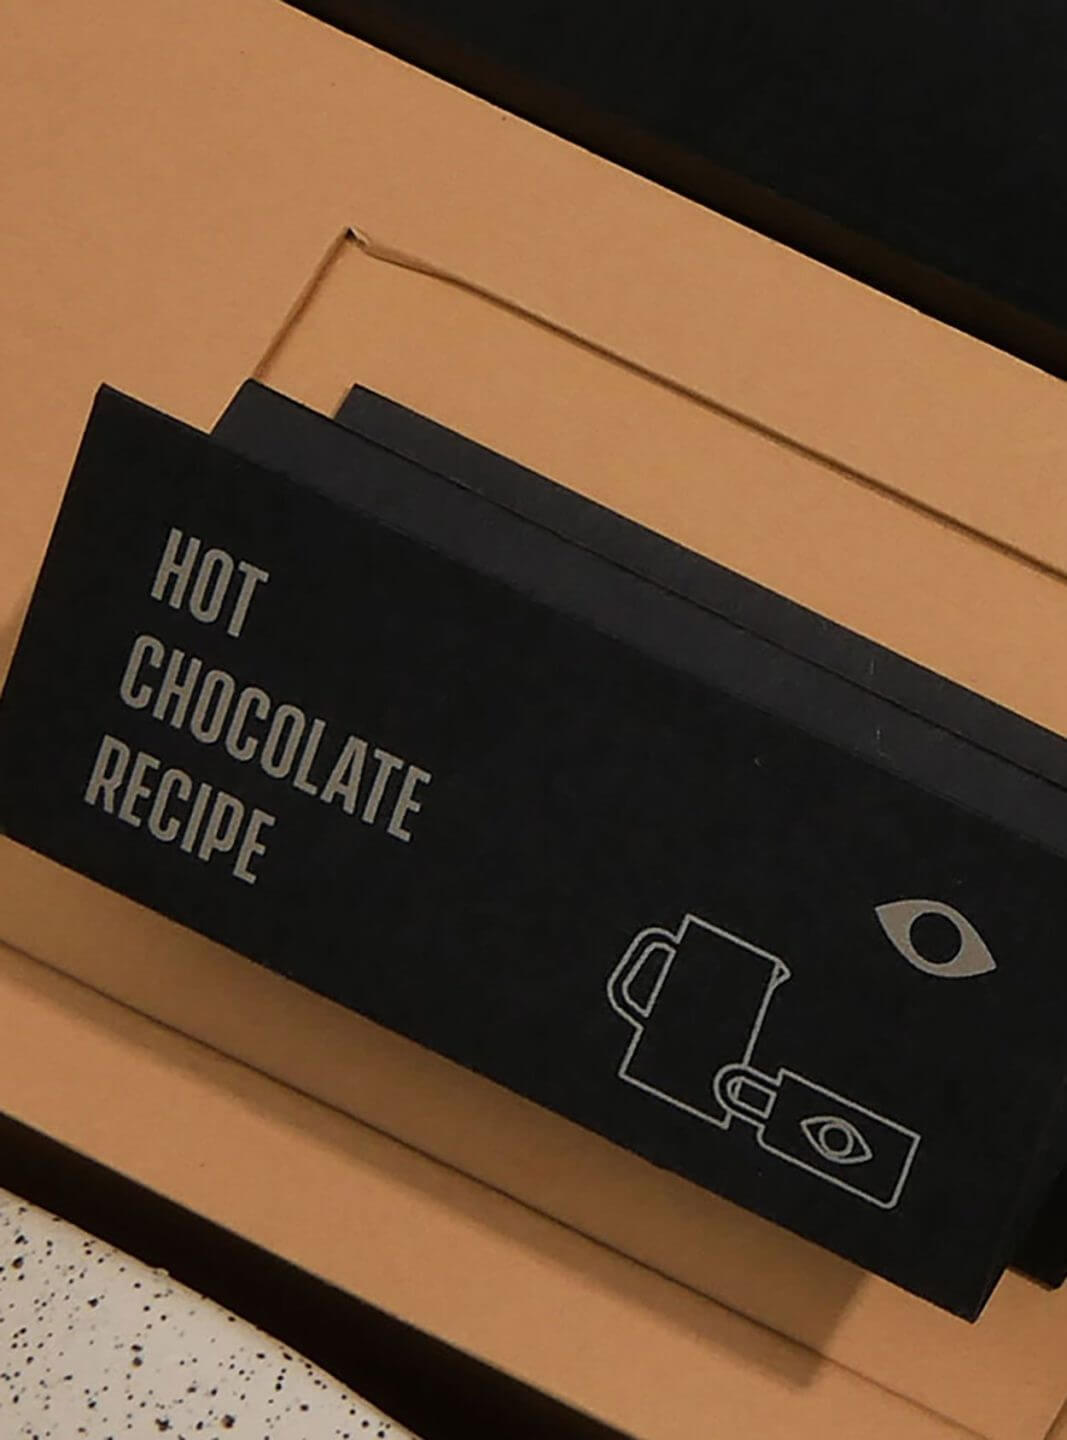 Hot chocolate recipe card